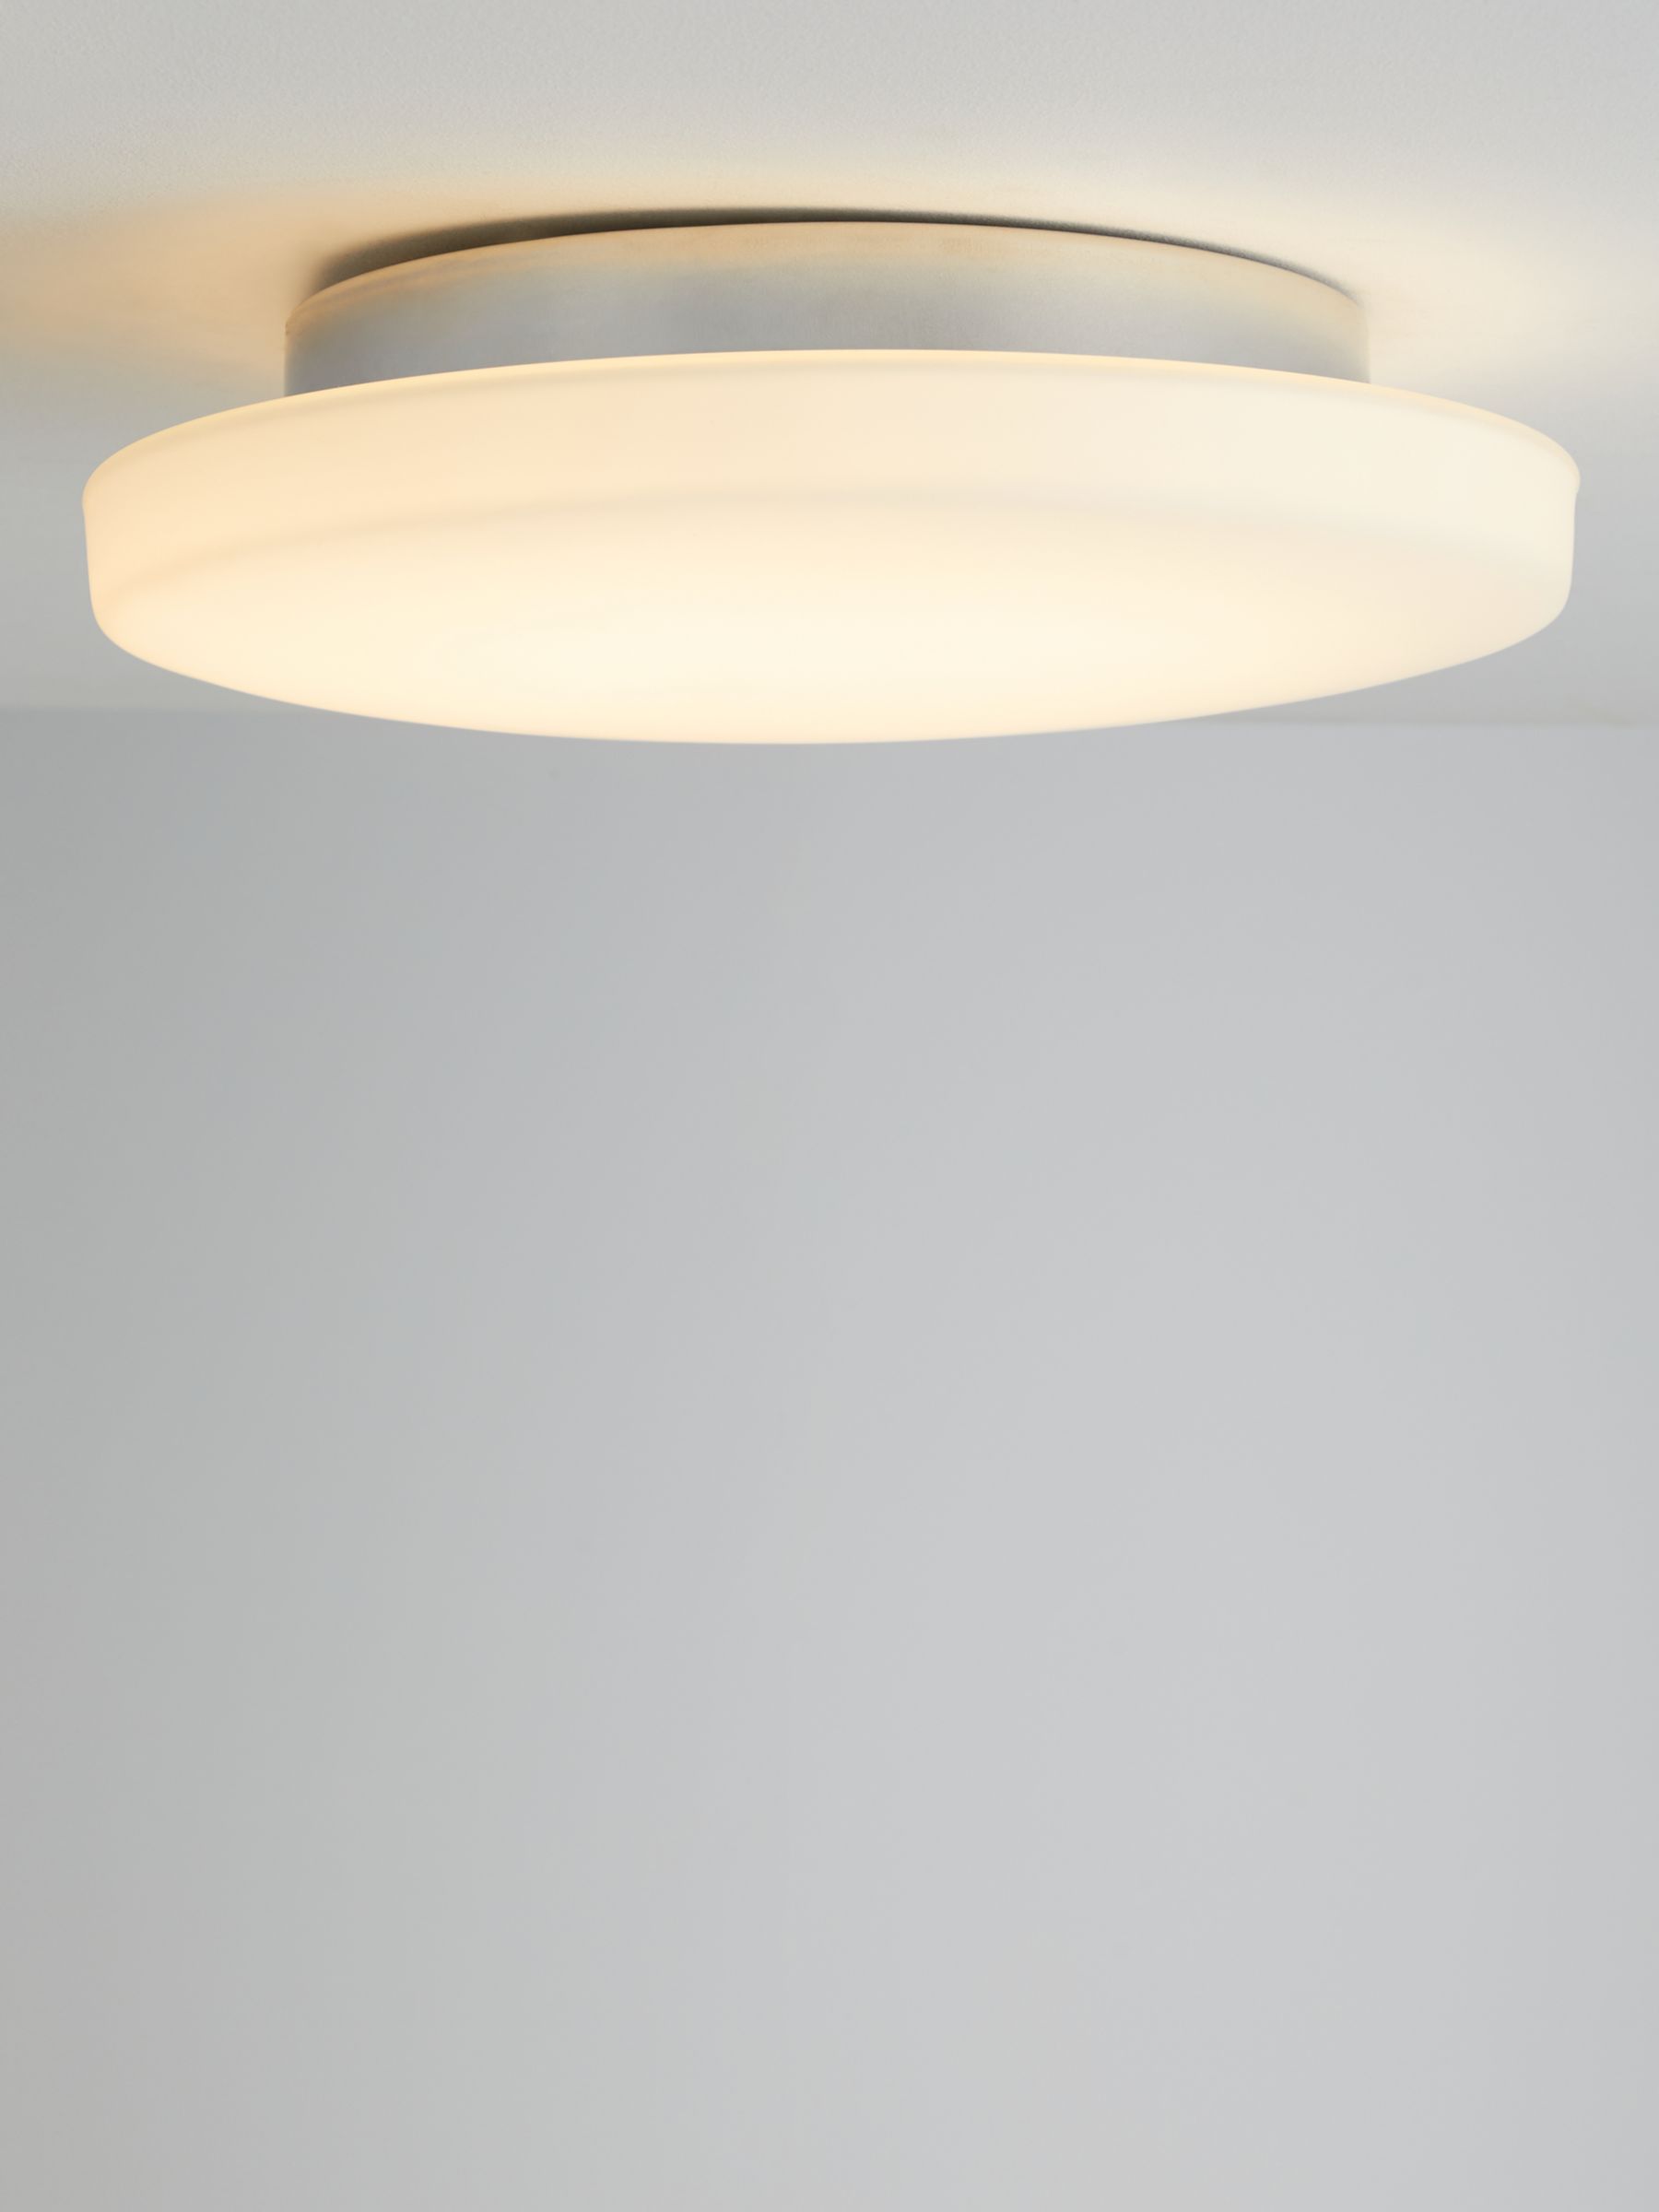 Photo of John lewis moonbeam led flush bathroom ceiling light white